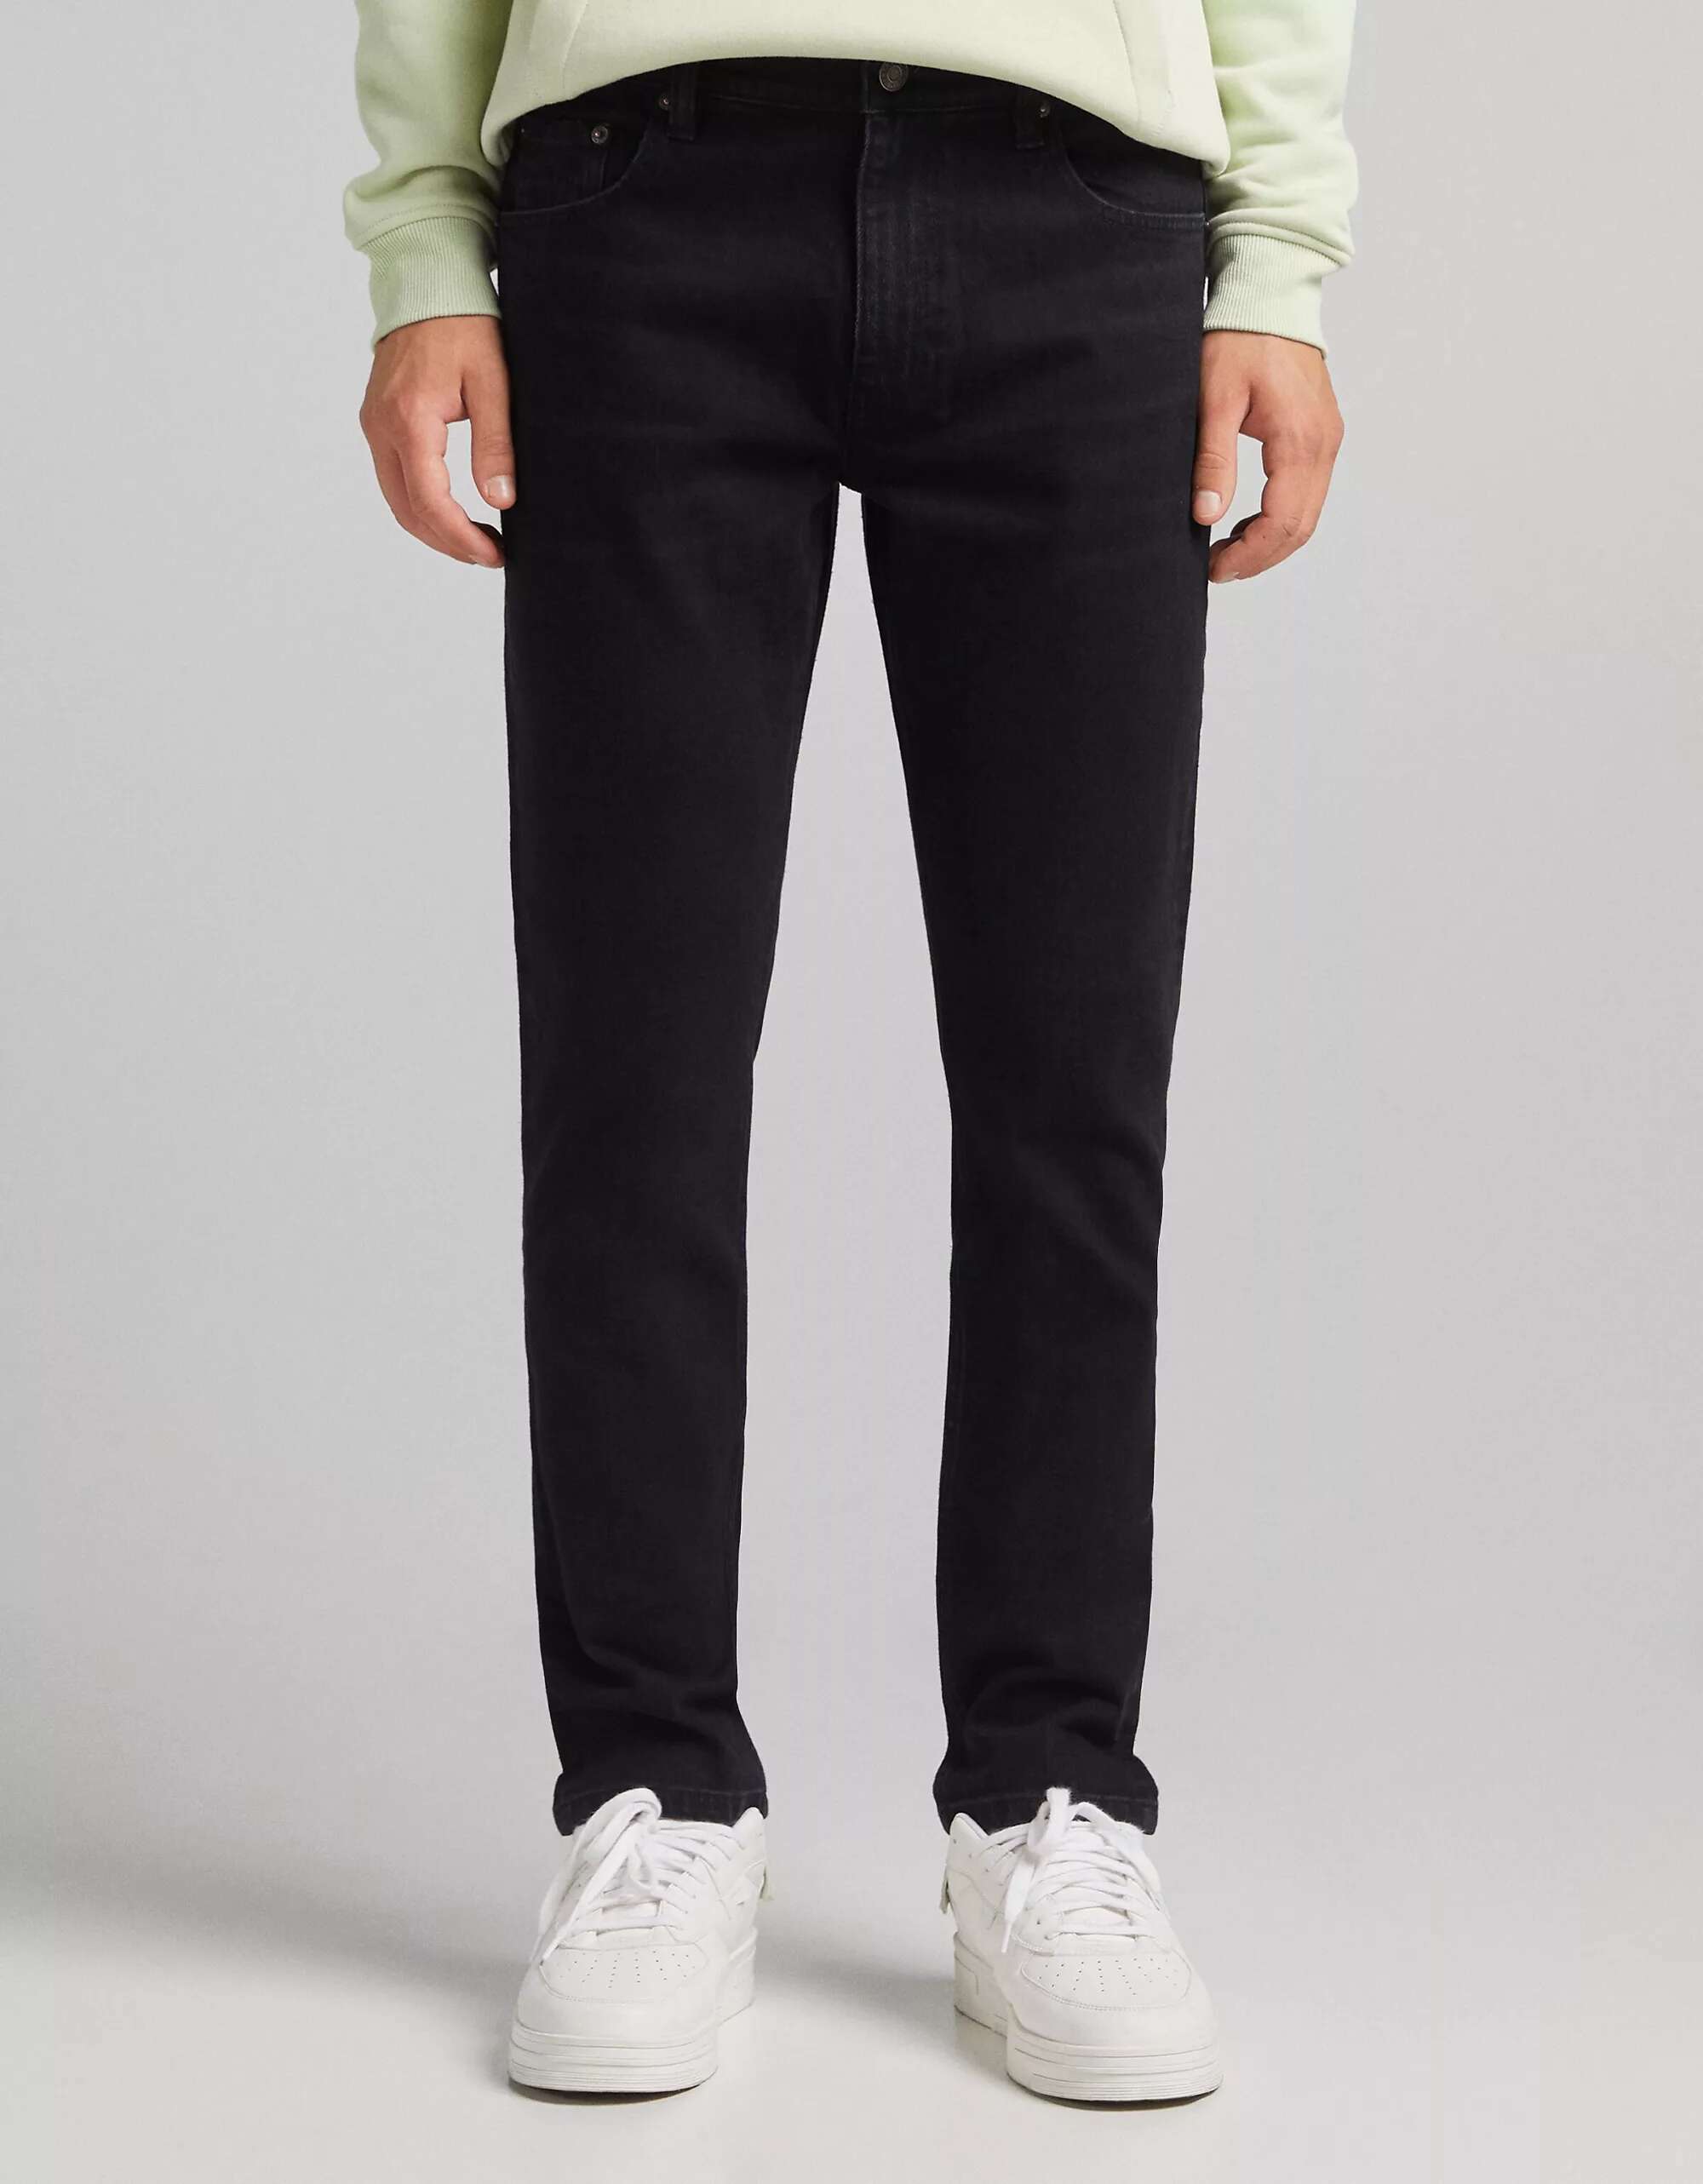 Черные узкие джинсы Bershka джемпер bershka легкий 44 размер